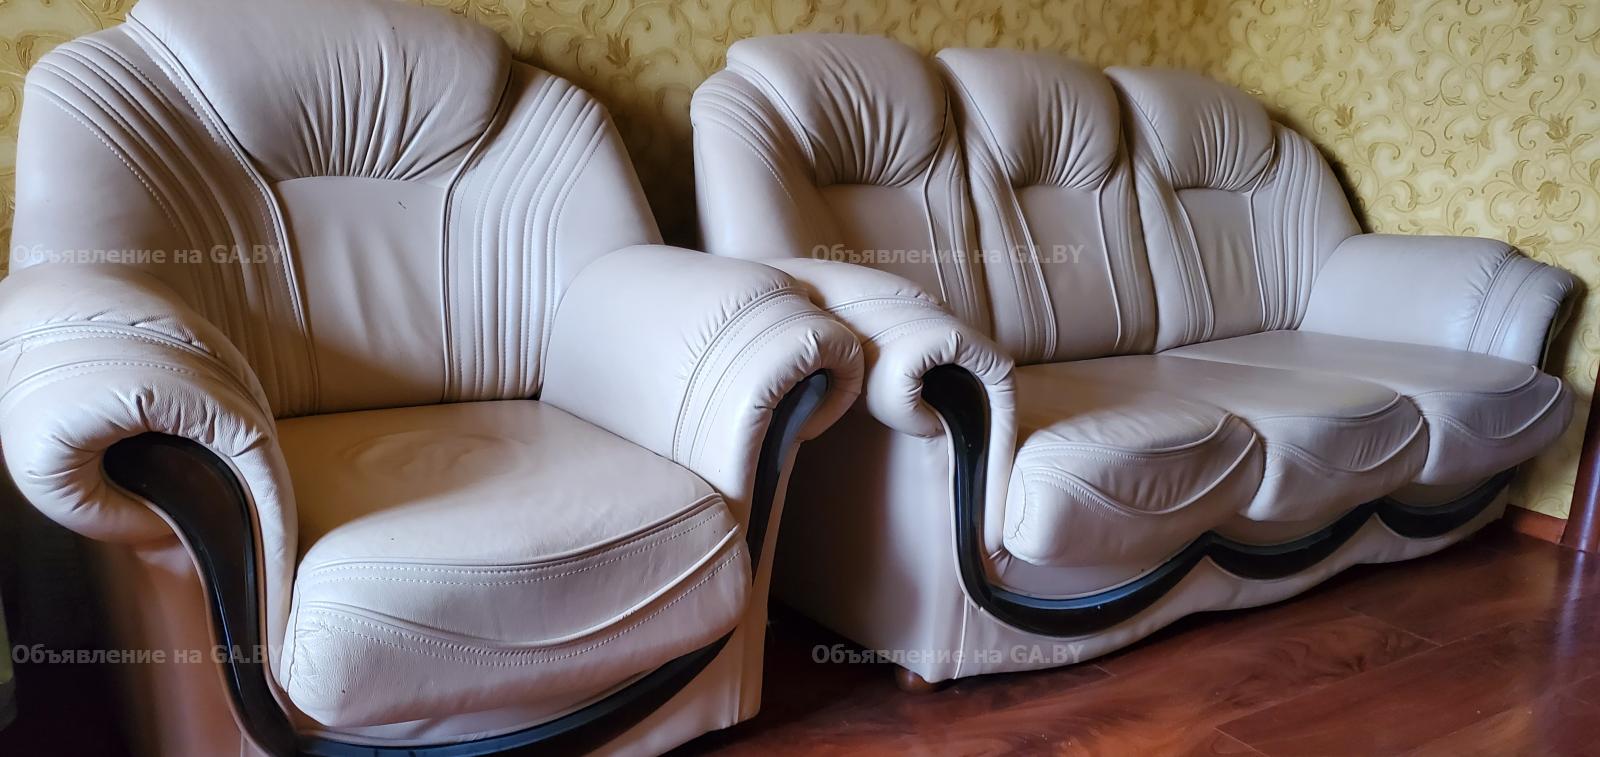 Продам Продам диван и кресло. - GA.BY